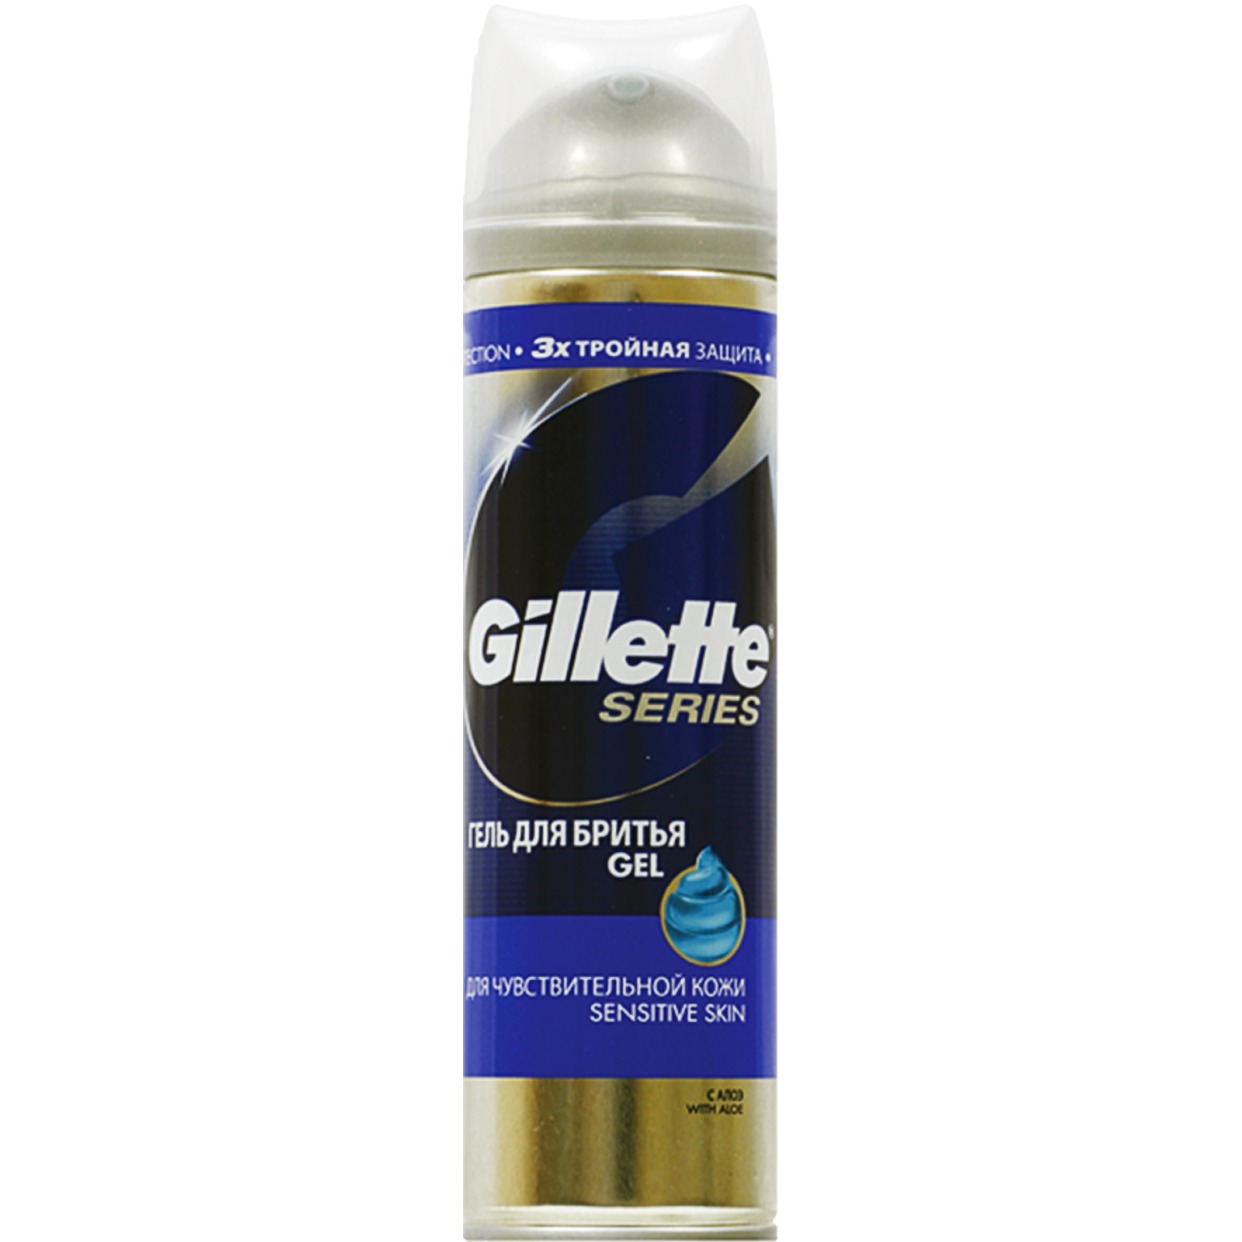 Гель для бритья Gillette Sensitive с Алоэ для чувствительной кожи 200 мл по акции в Пятерочке